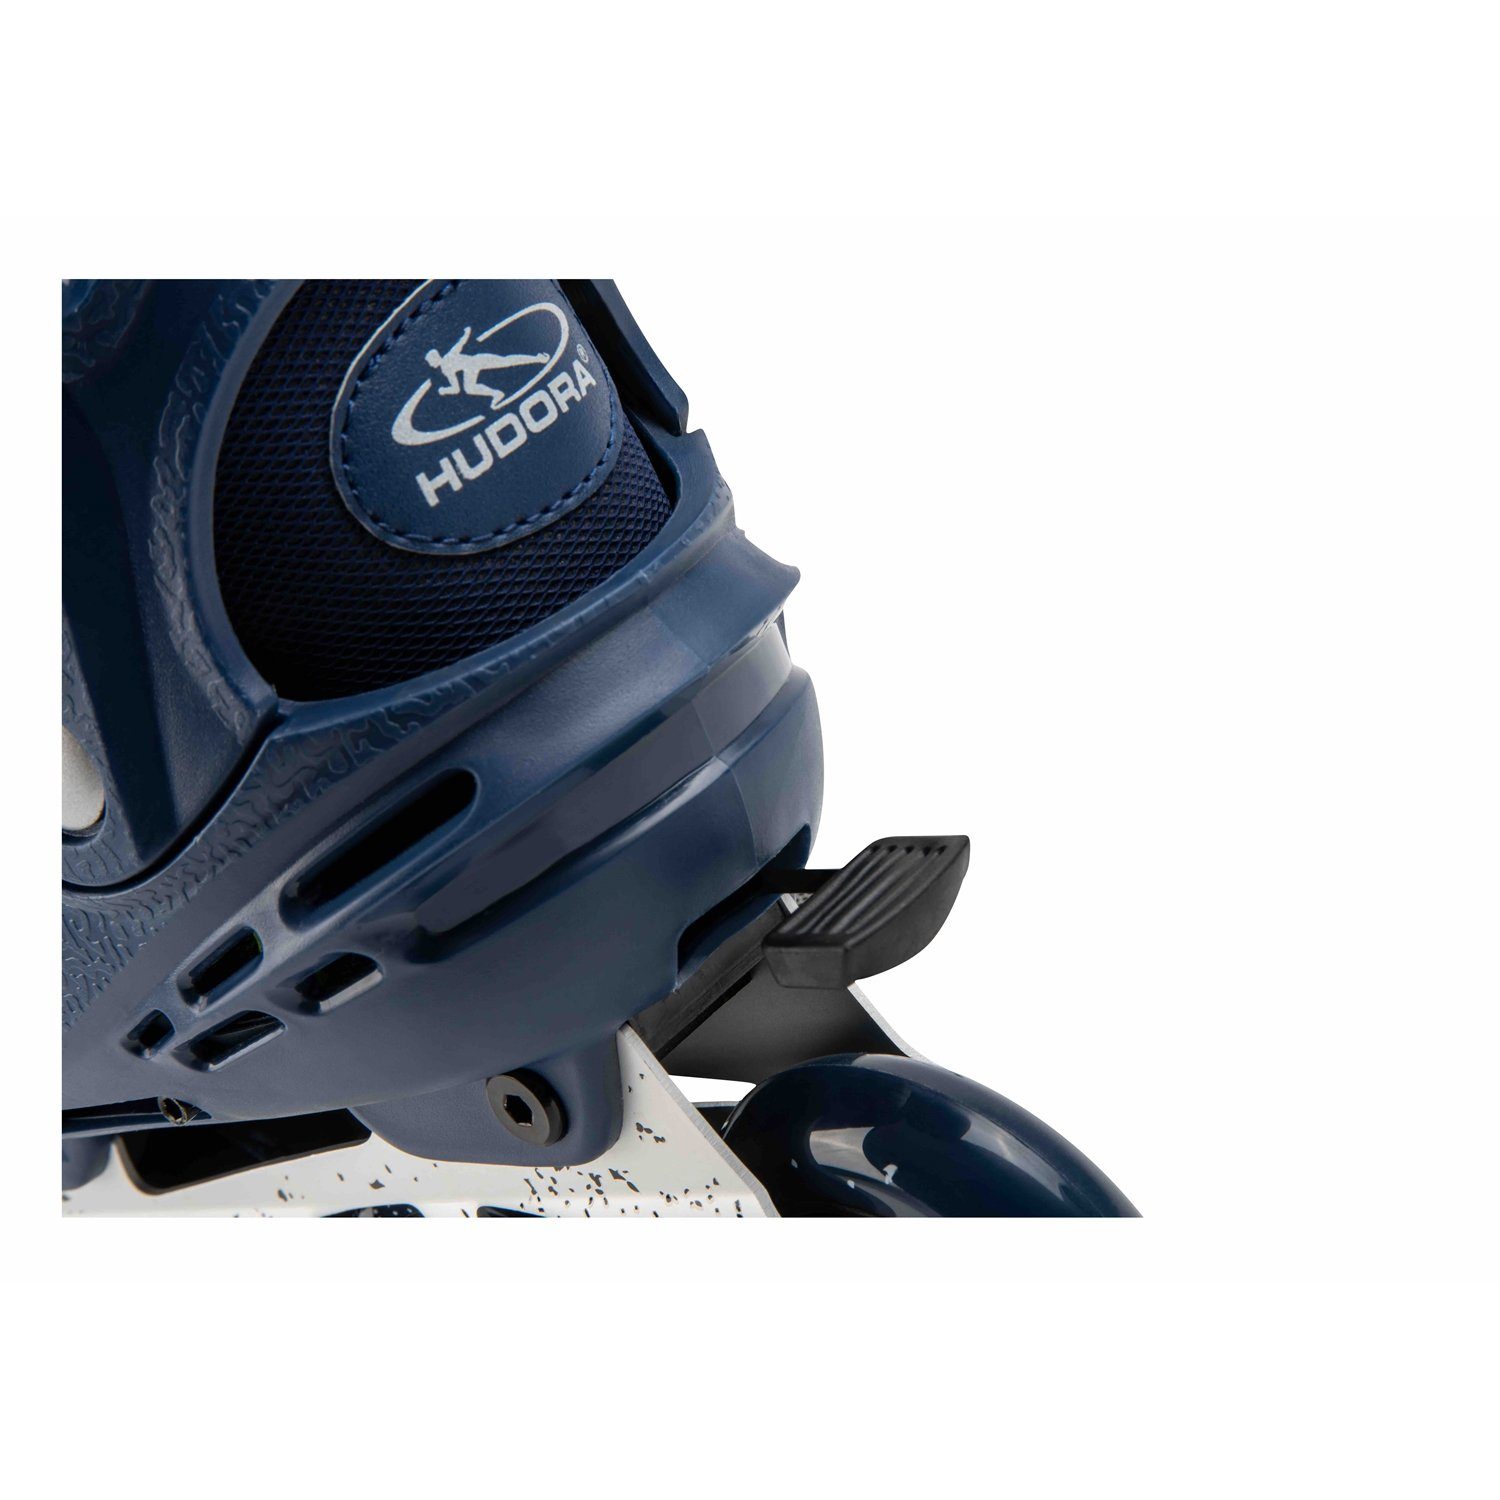 Hudora deep 28451 Inline Scooter Gr.35-40 Blue Skates Comfort,